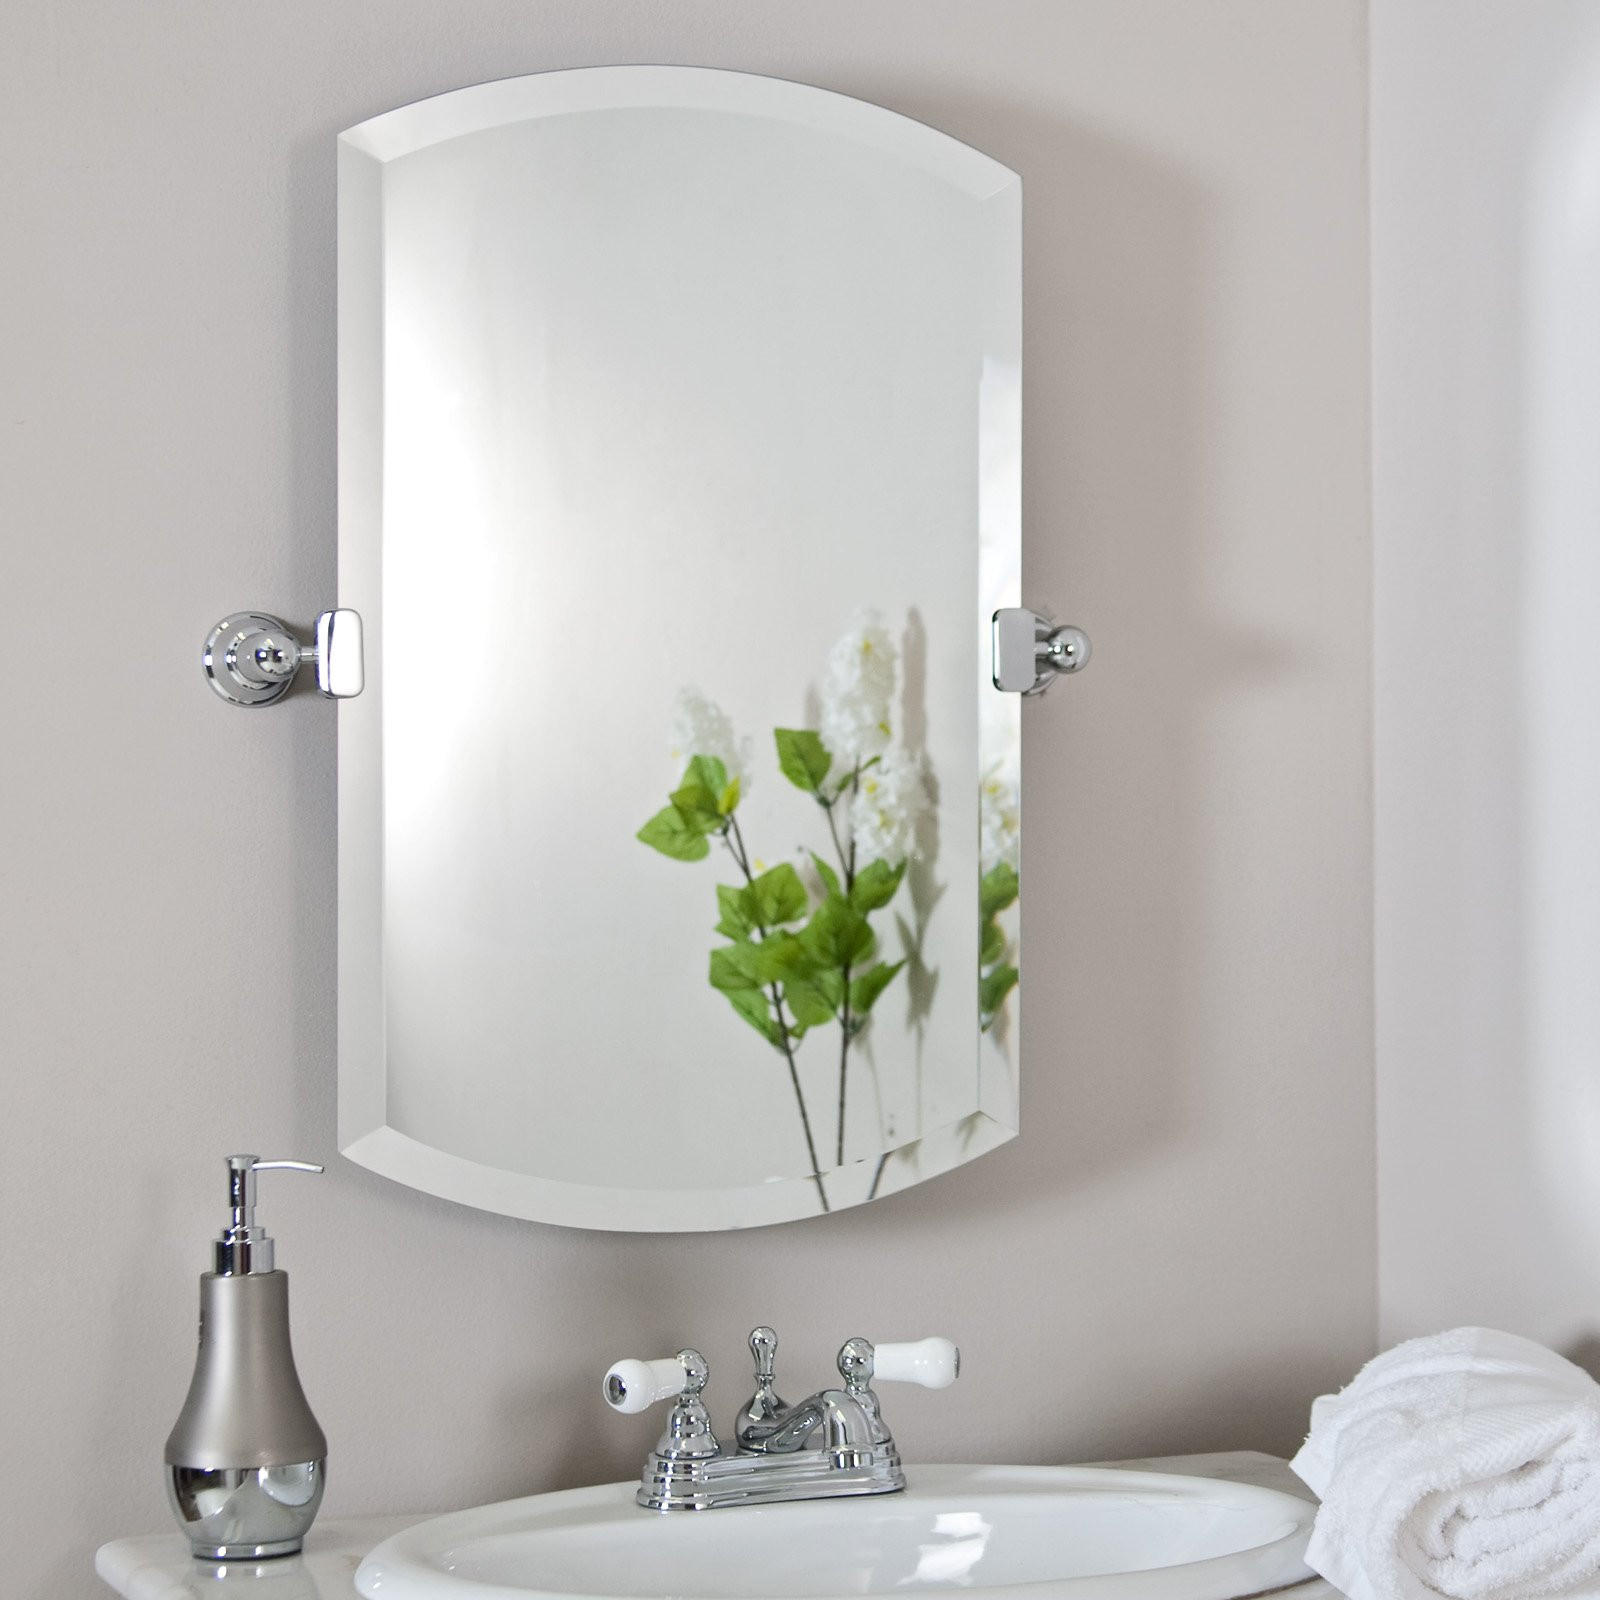 Bathroom Mirror Design
 Bathroom Mirror Designs and Decorative Ideas